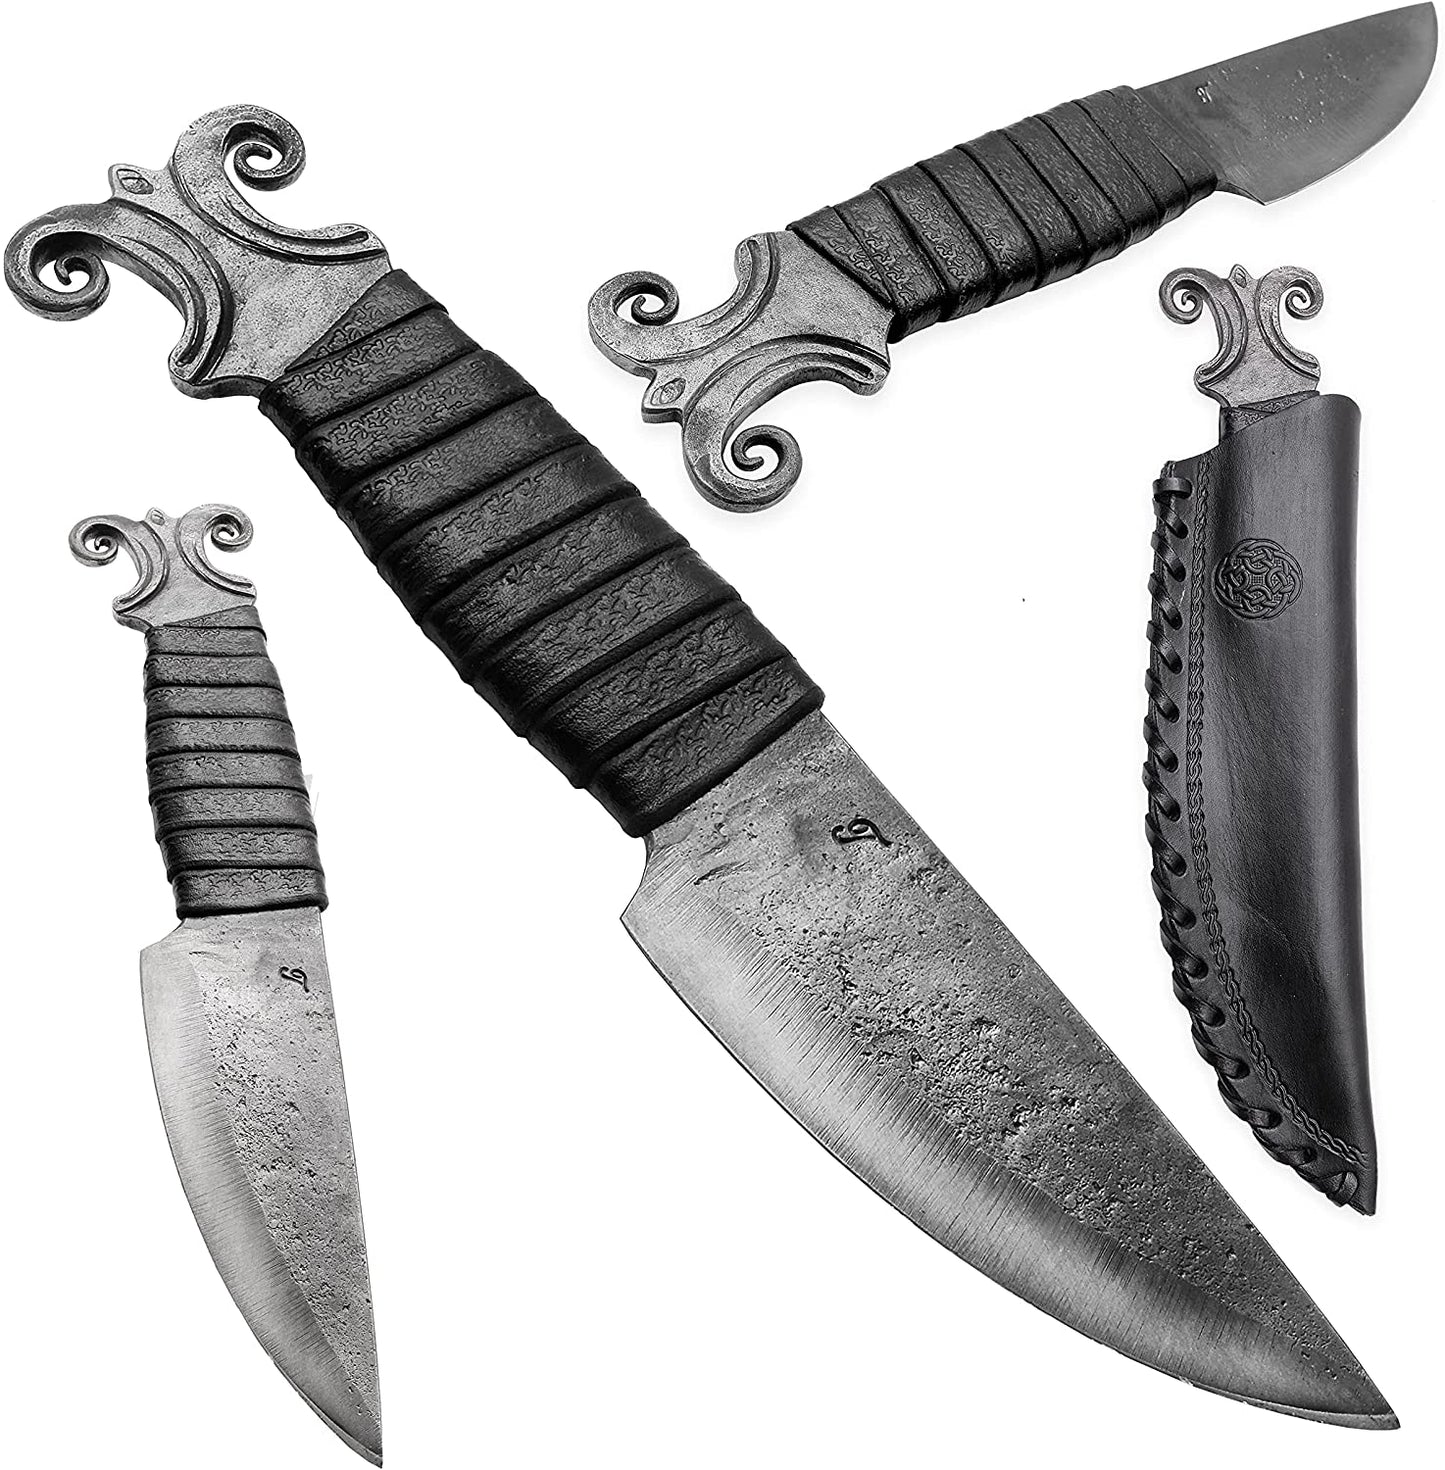 Kovaný vikingský nůž Beran s pochvou